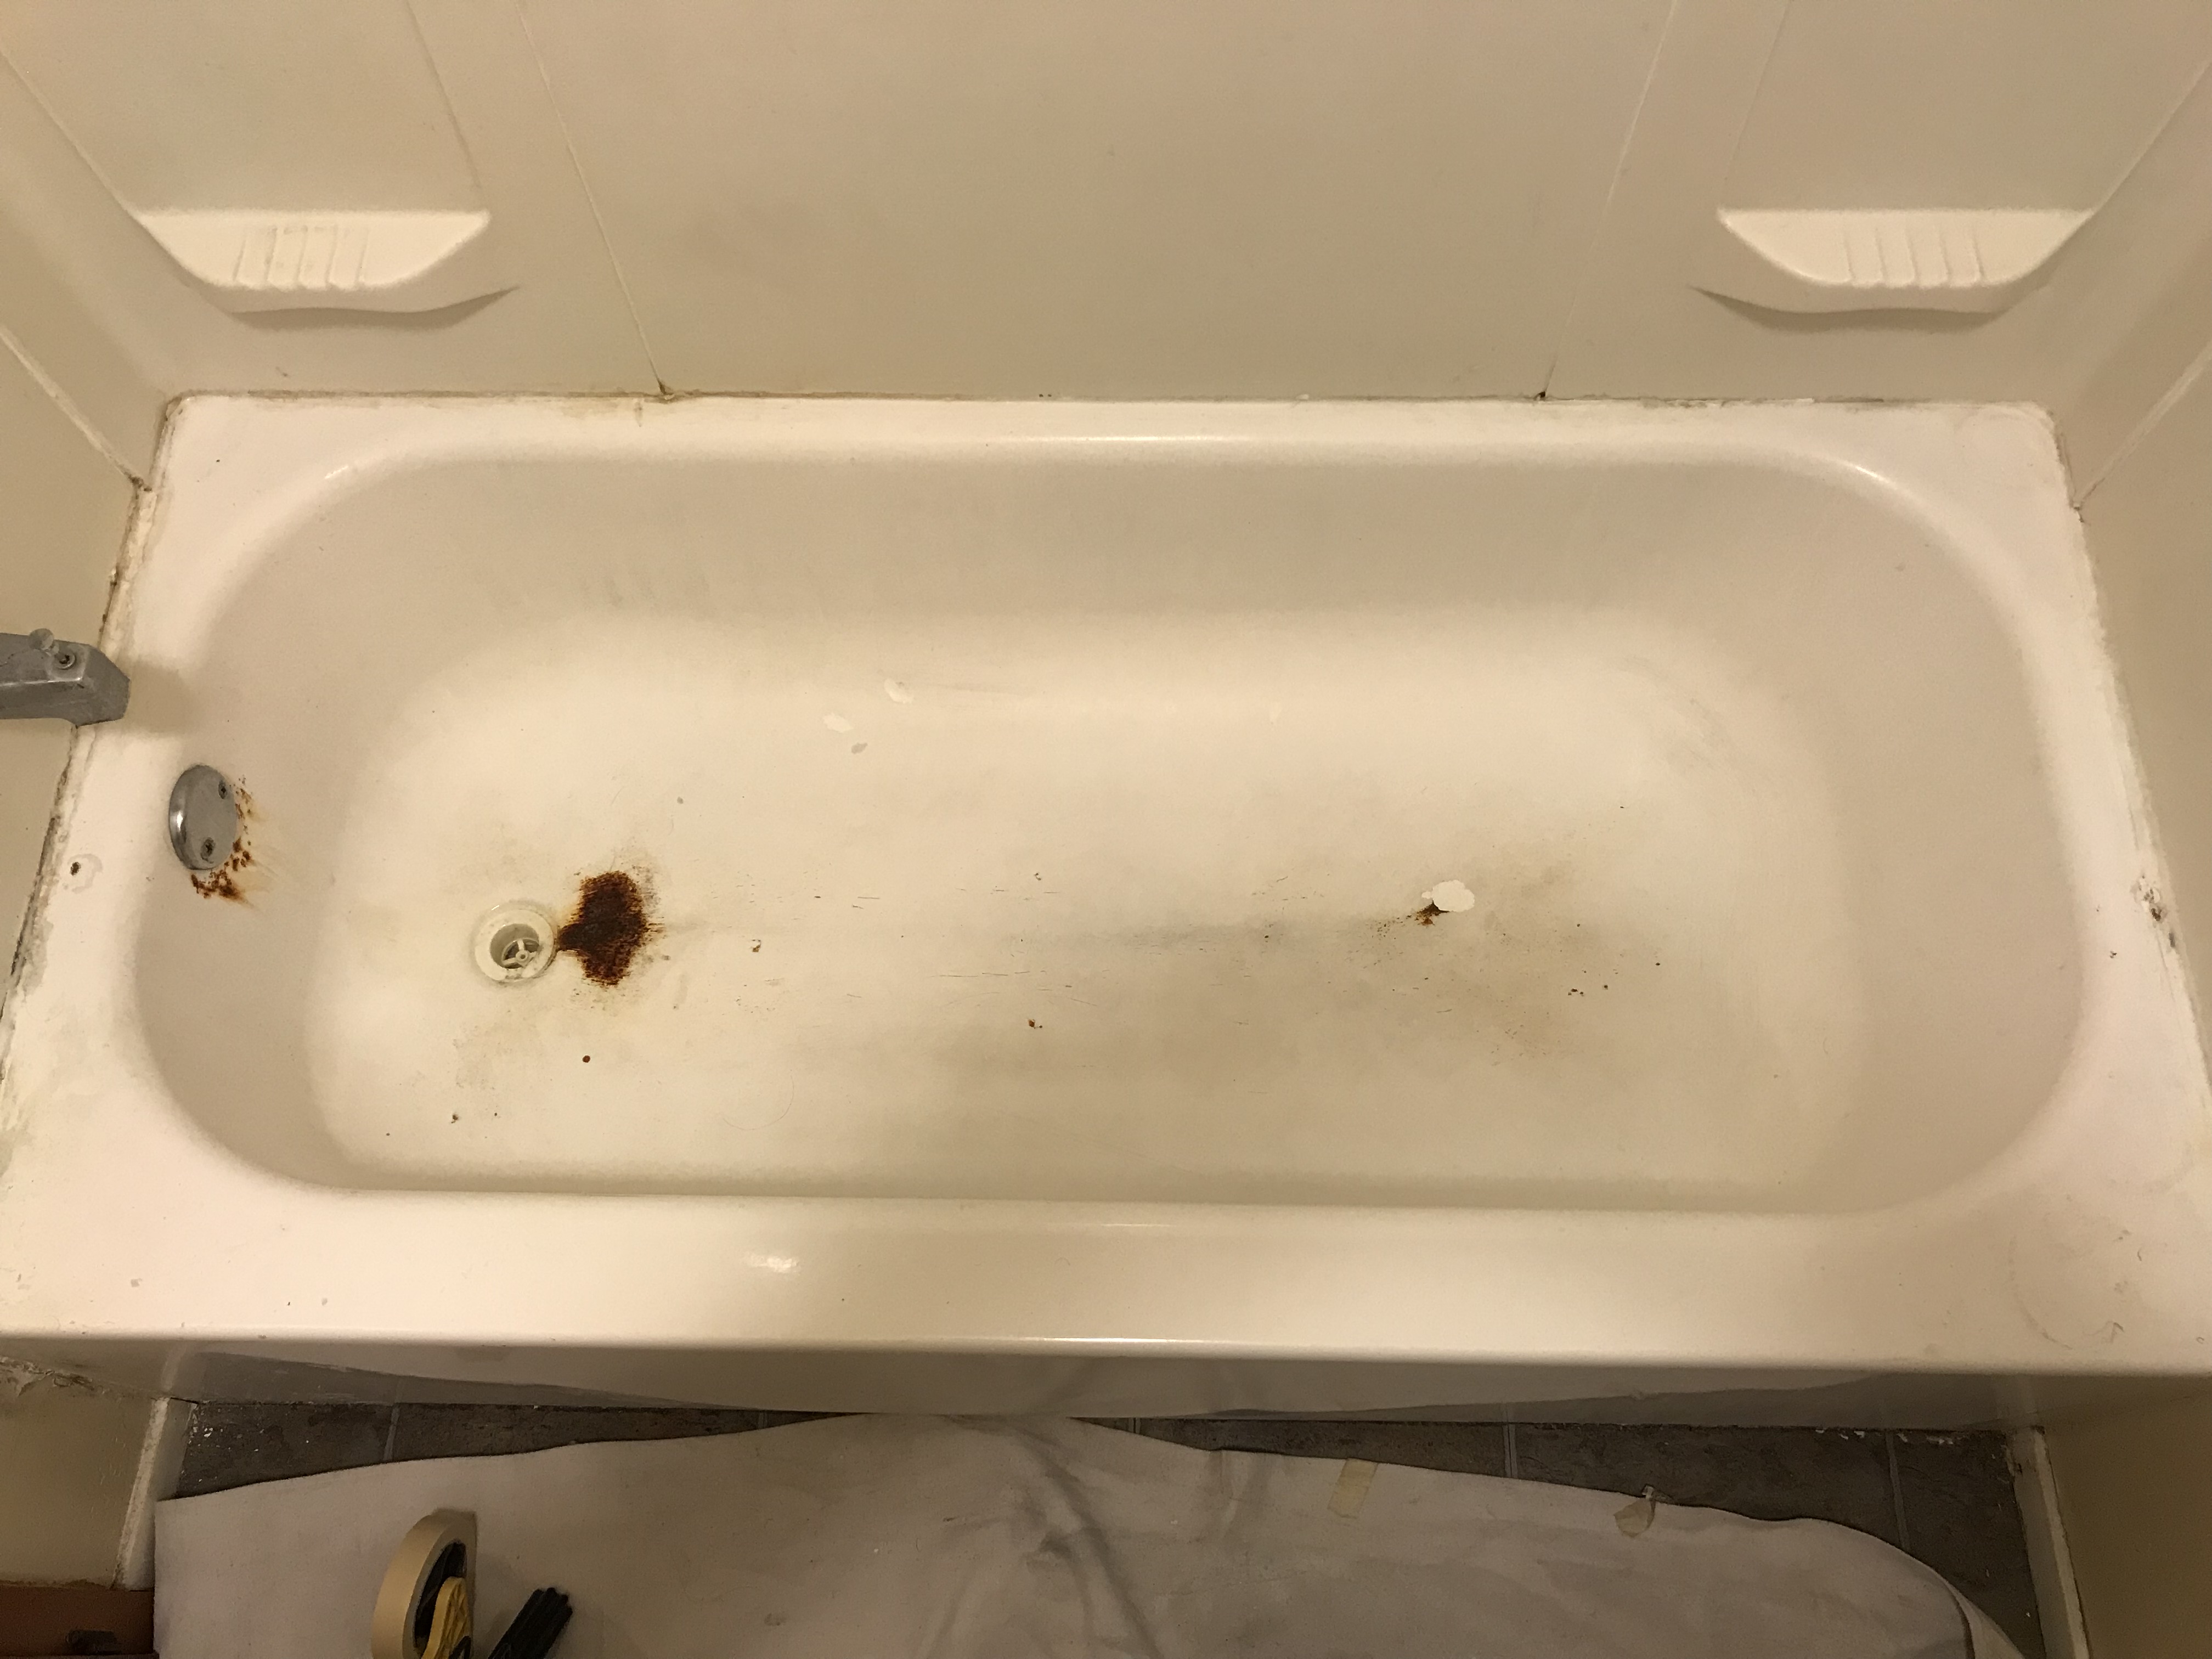 Bathtub refinishing, spot repair the rust damage - NuFinishPro